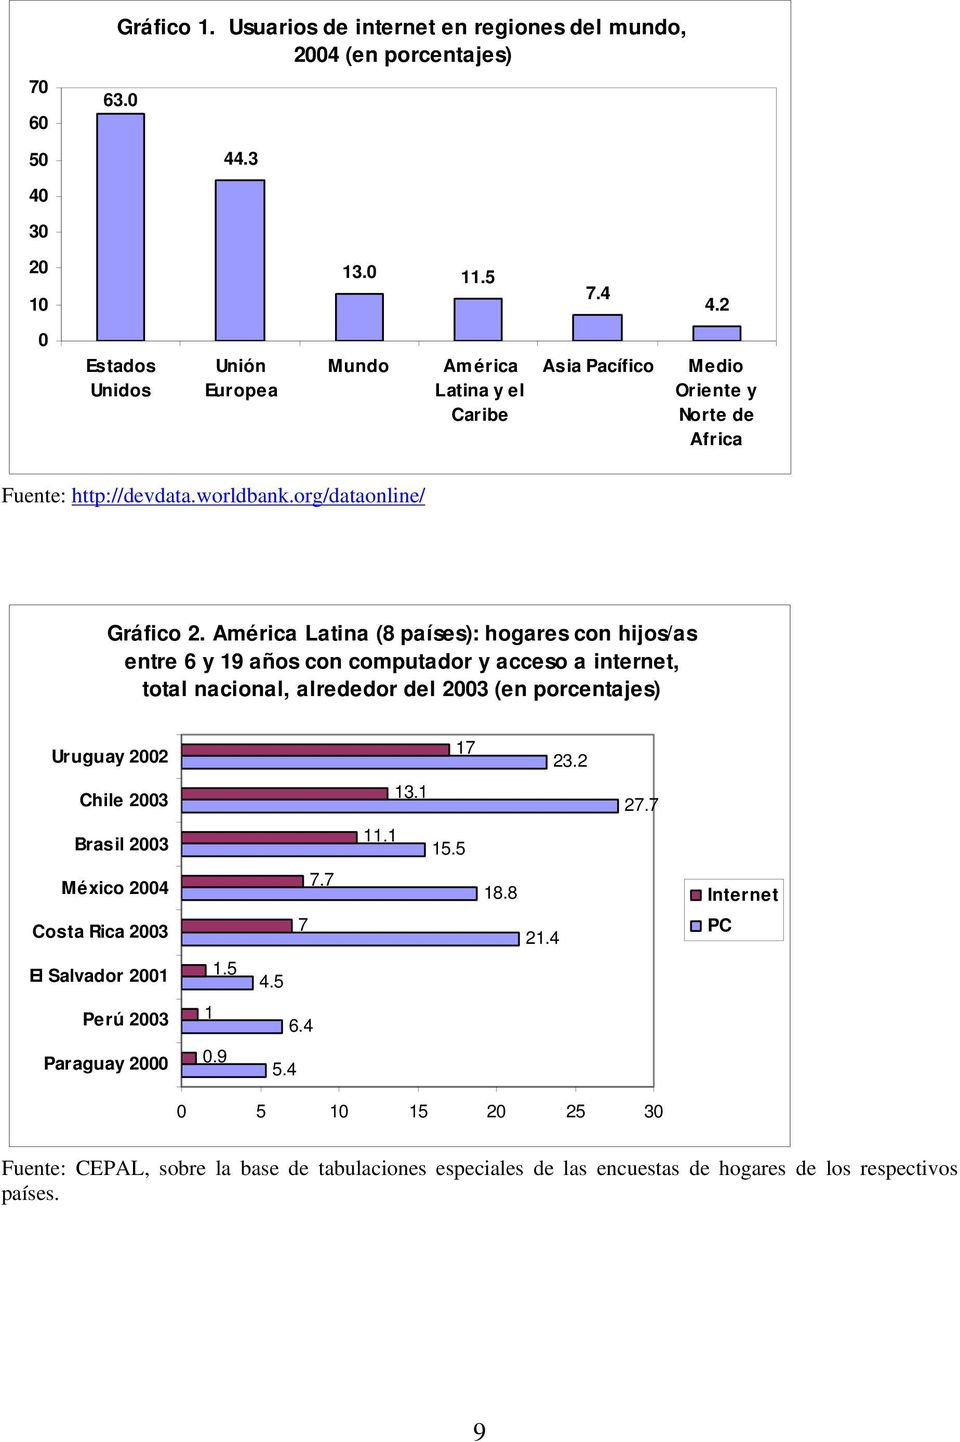 América Latina (8 países): hogares con hijos/as entre 6 y 19 años con computador y acceso a internet, total nacional, alrededor del 2003 (en porcentajes) Uruguay 2002 17 23.2 Chile 2003 13.